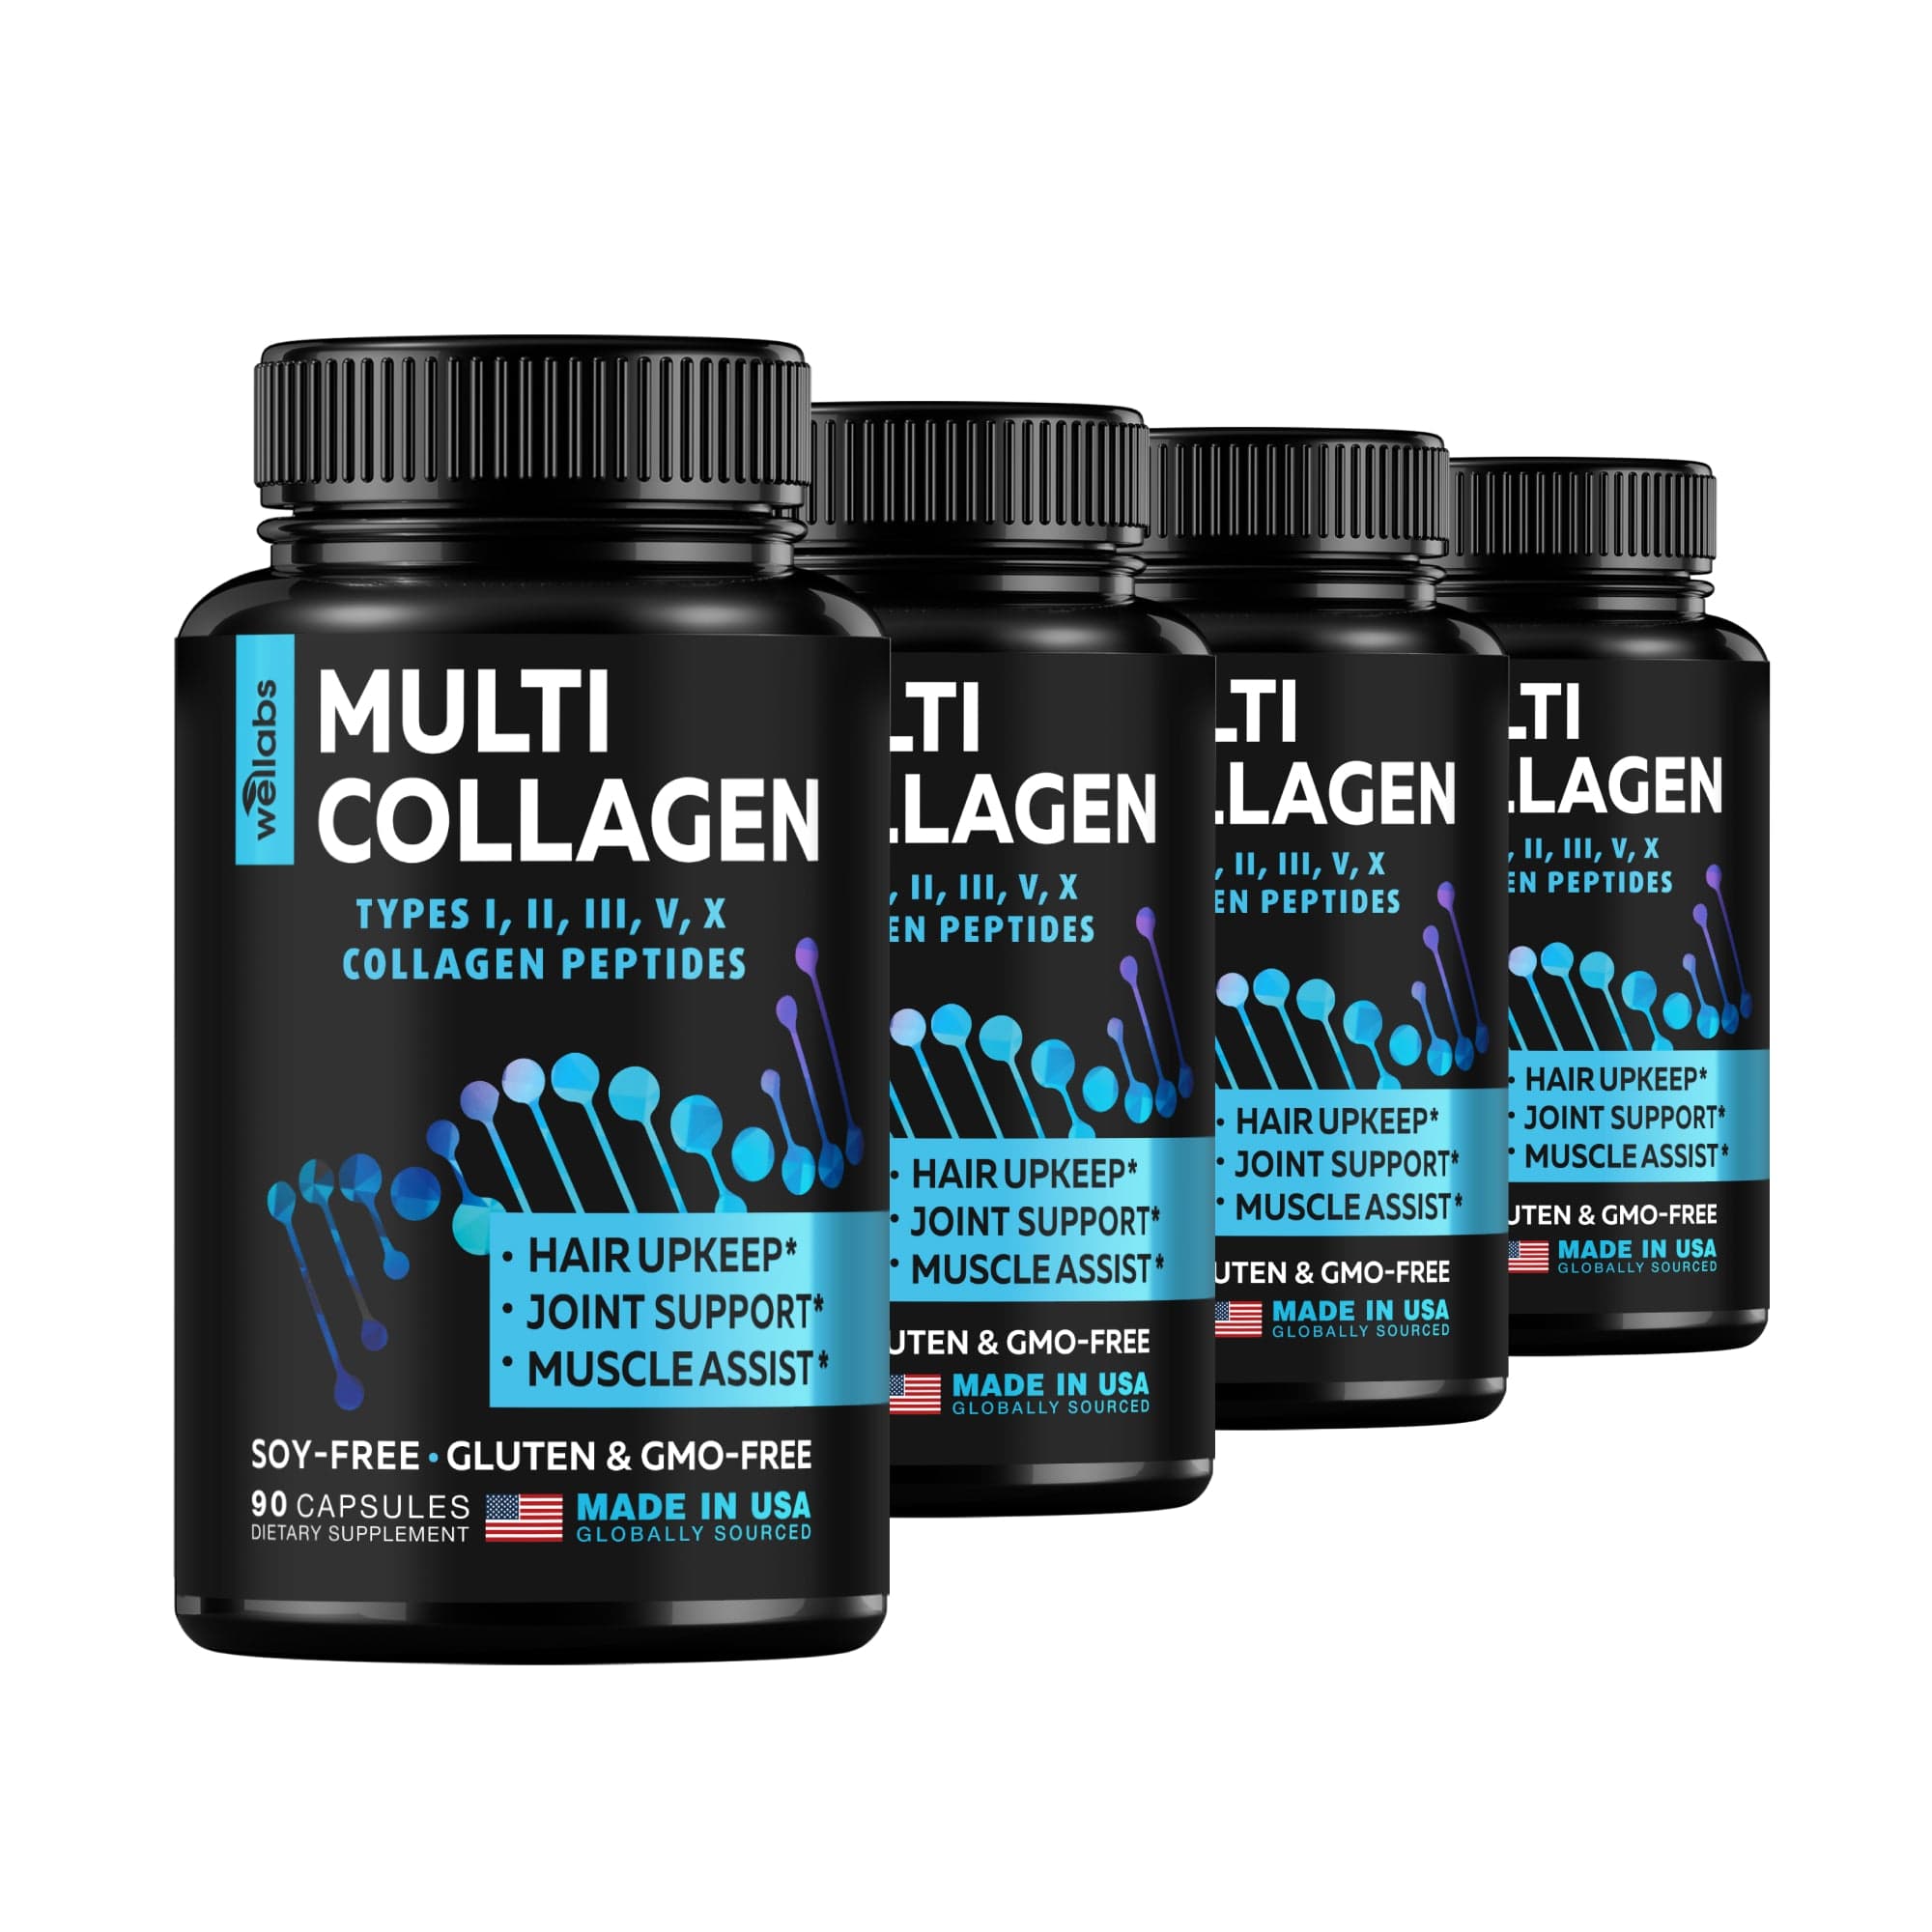 Multi-Collagen Capsules Buy 3 Get 1 Free